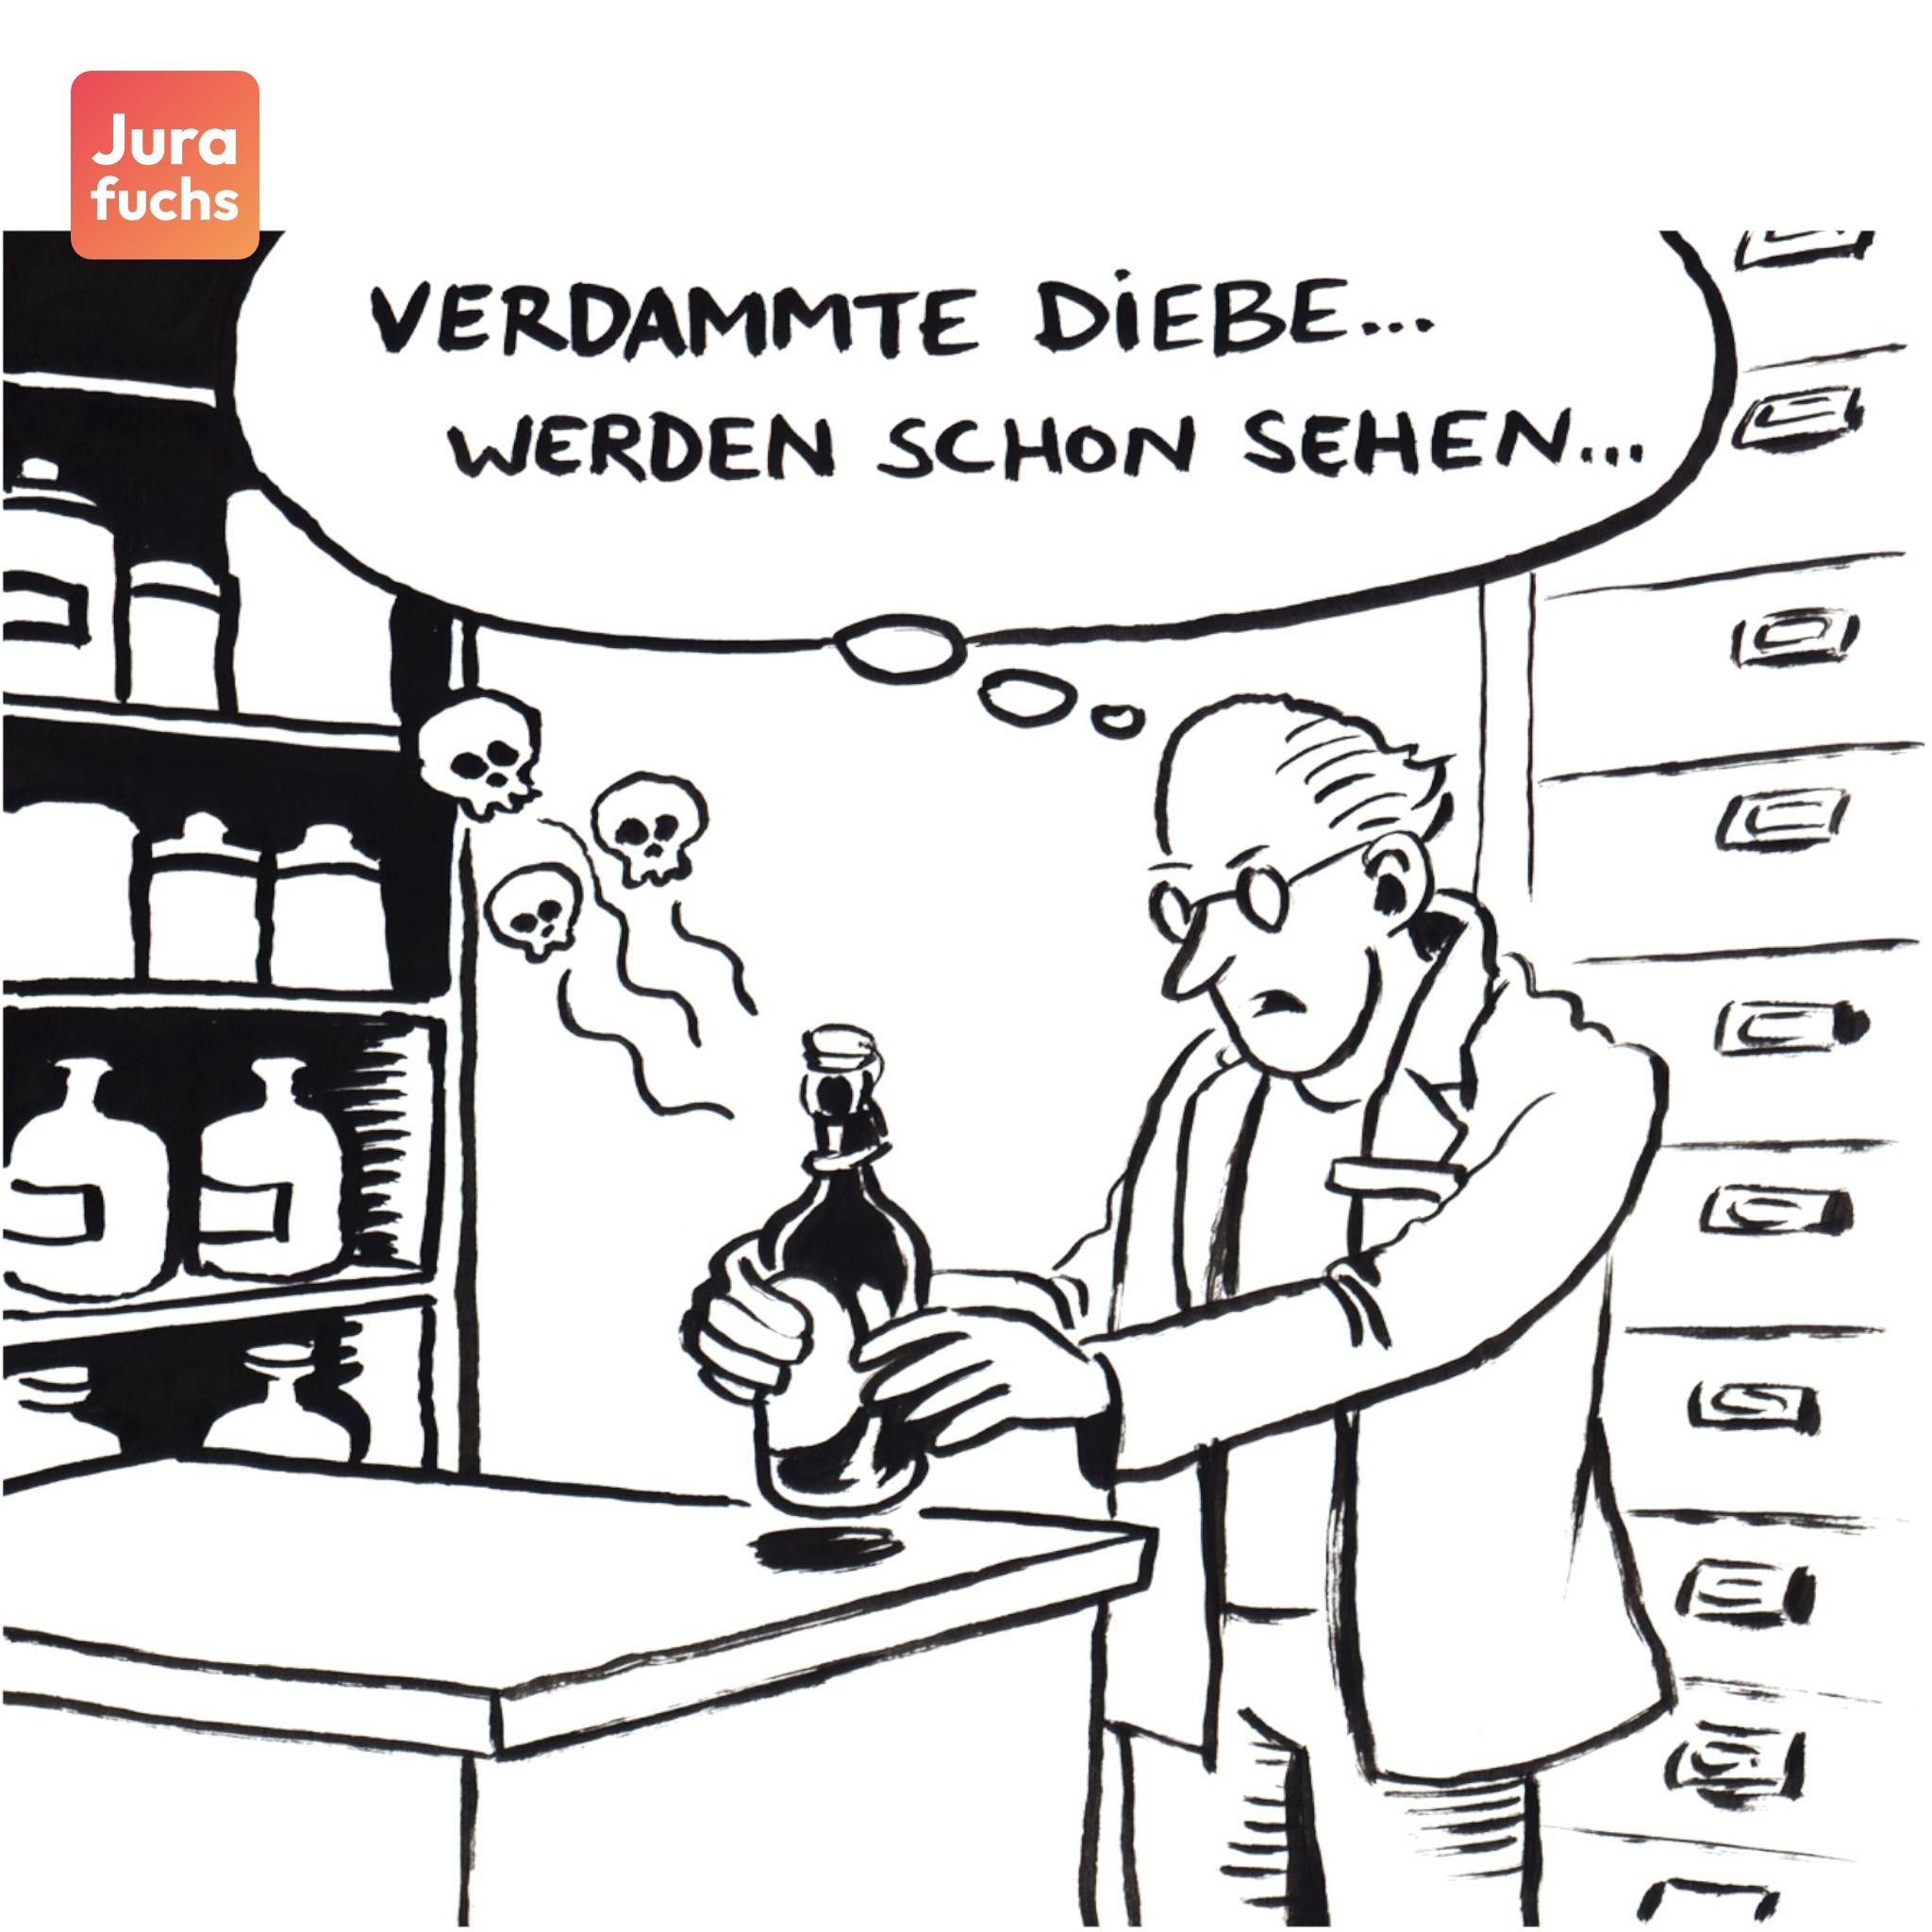 Jurafuchs Illustration zum Passauer Giftfallenfall (BGH 12.08.1997): Ein Apotheker stellt eine Flasche Bier mit einer tödlichen Menge Gift auf, davon ausgehend, dass die Einbrecher davon trinken.